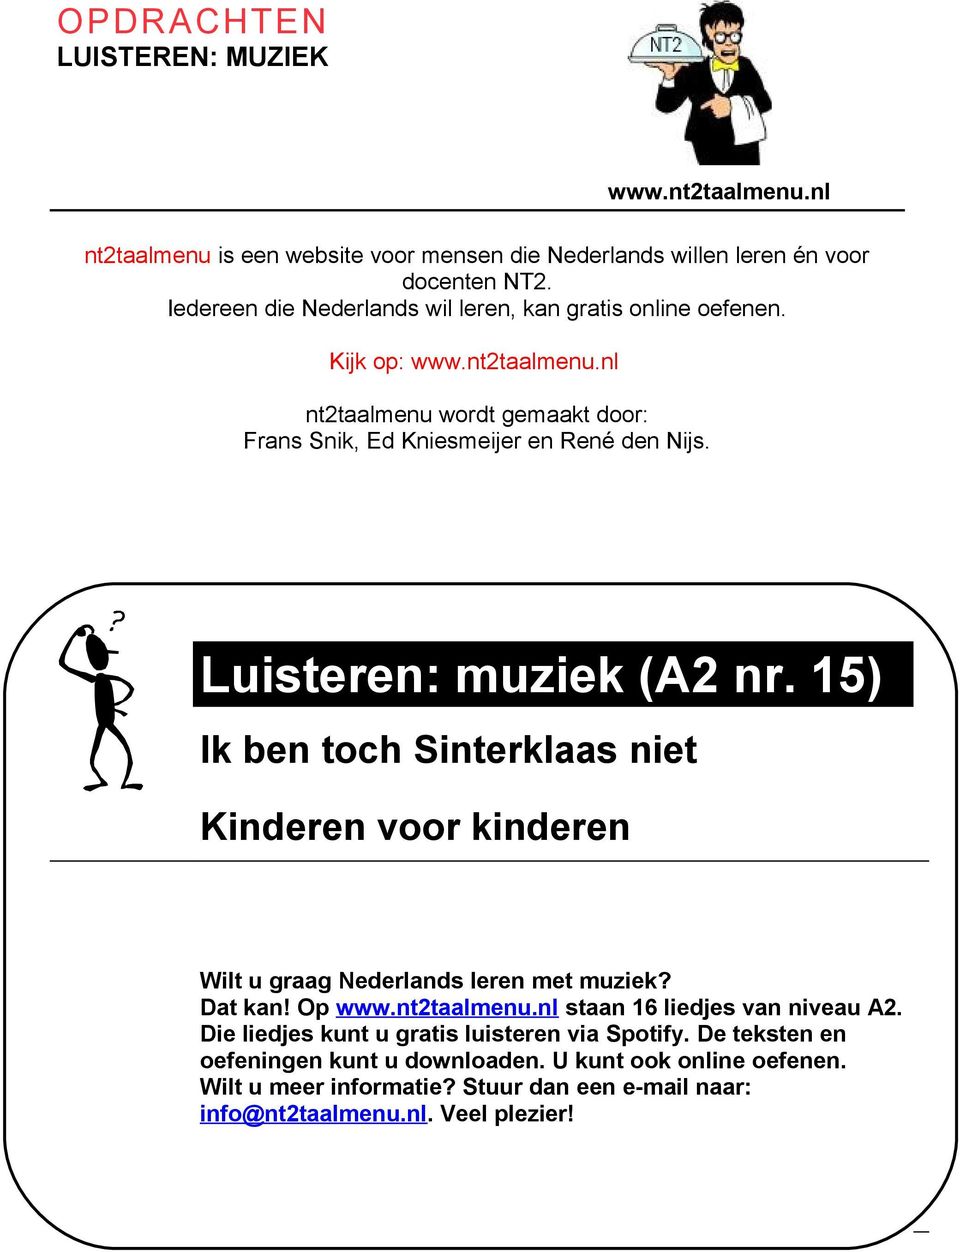 Wat leer je? Luisteren: muziek (A2 nr. 15) Ik ben toch Sinterklaas niet Kinderen voor kinderen Wilt u graag Nederlands leren met muziek? Dat kan! Op www.nt2taalmenu.